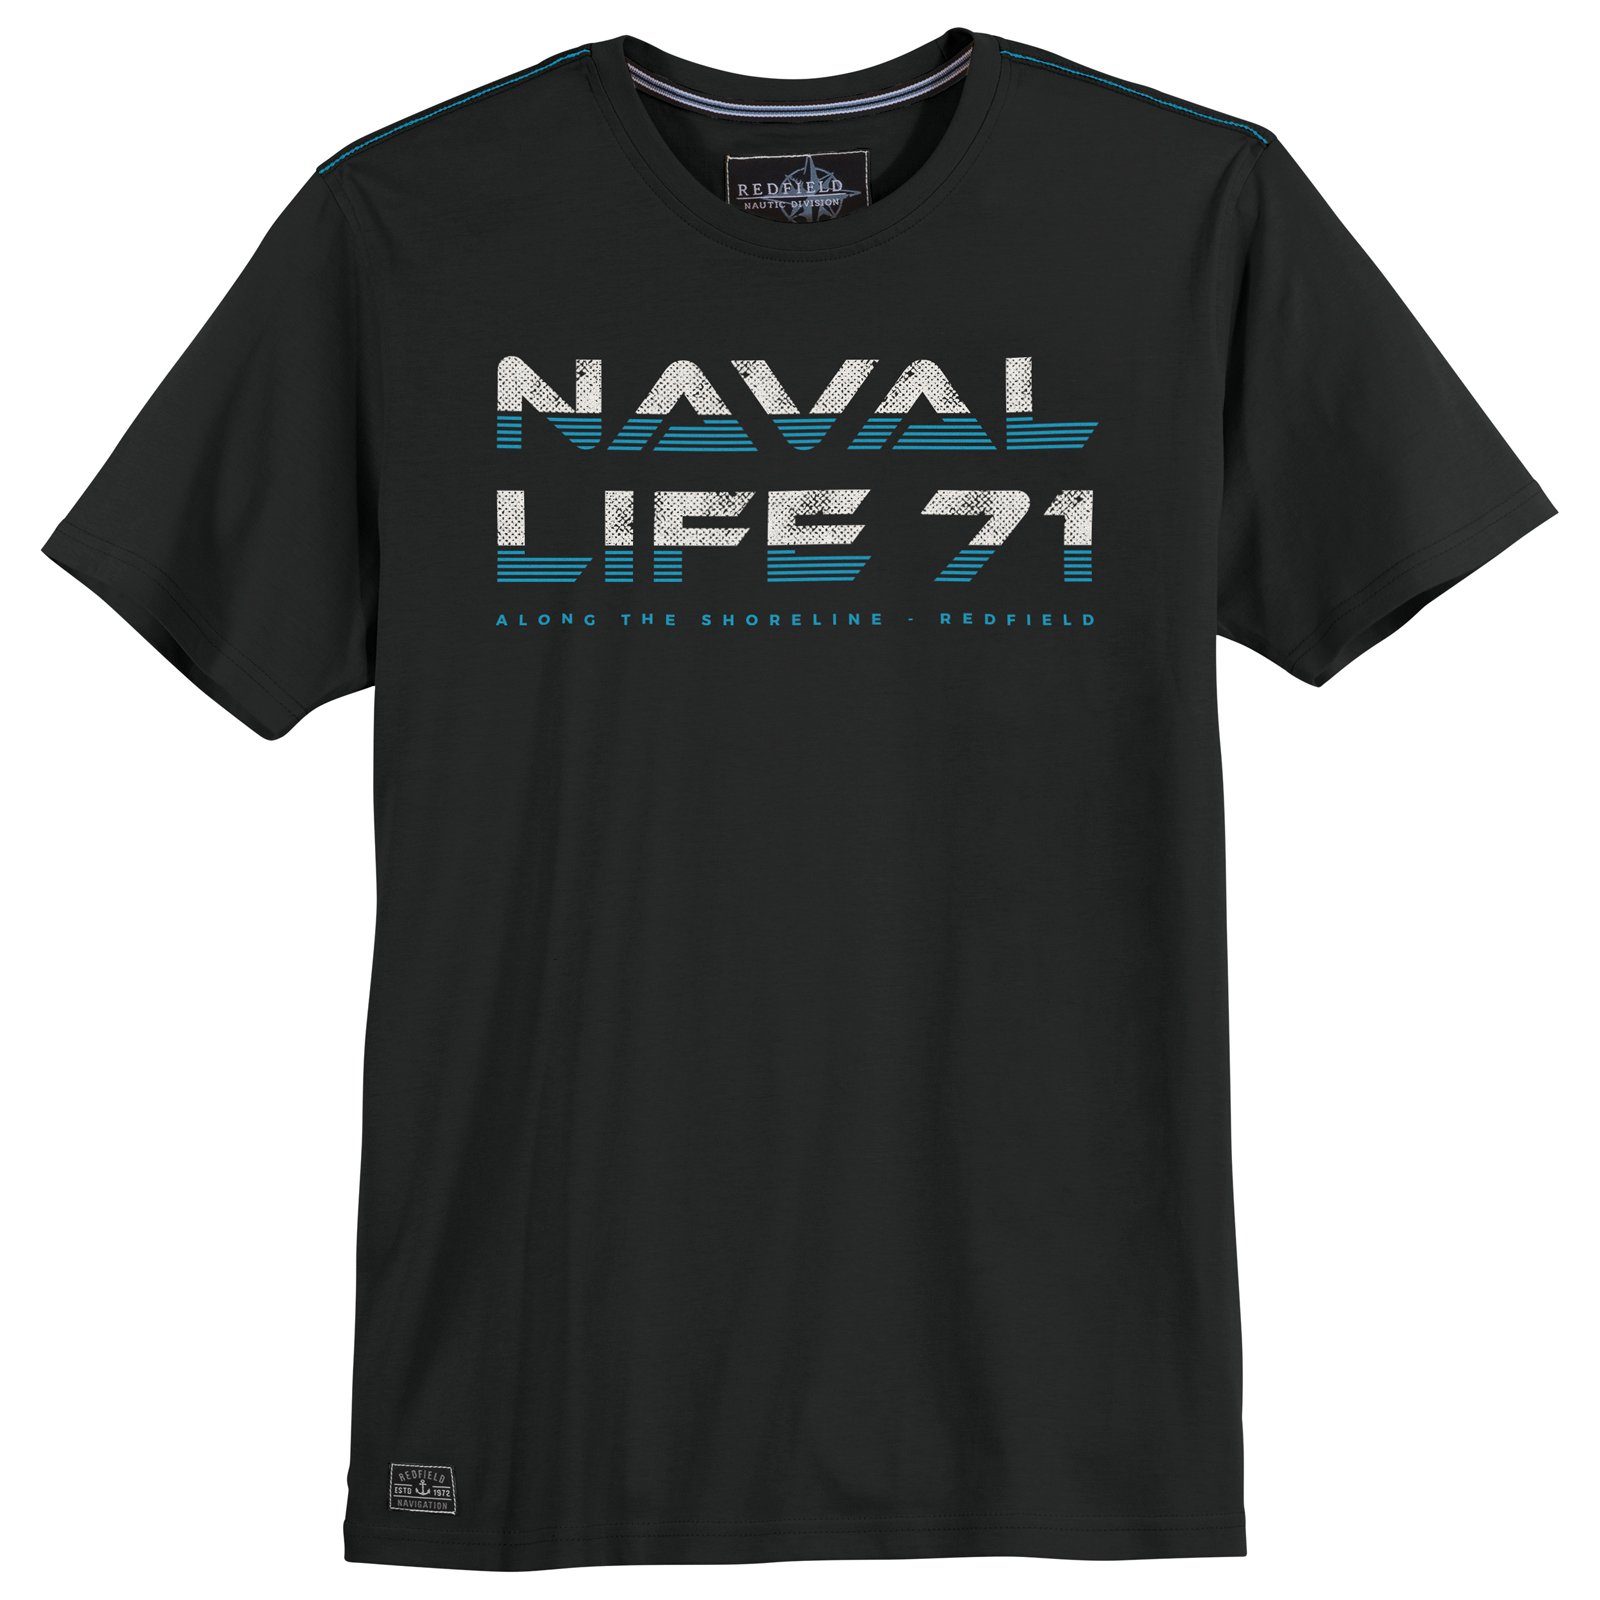 redfield Rundhalsshirt Große Größen Herren Redfield T-Shirt Naval Life 71 schwarz